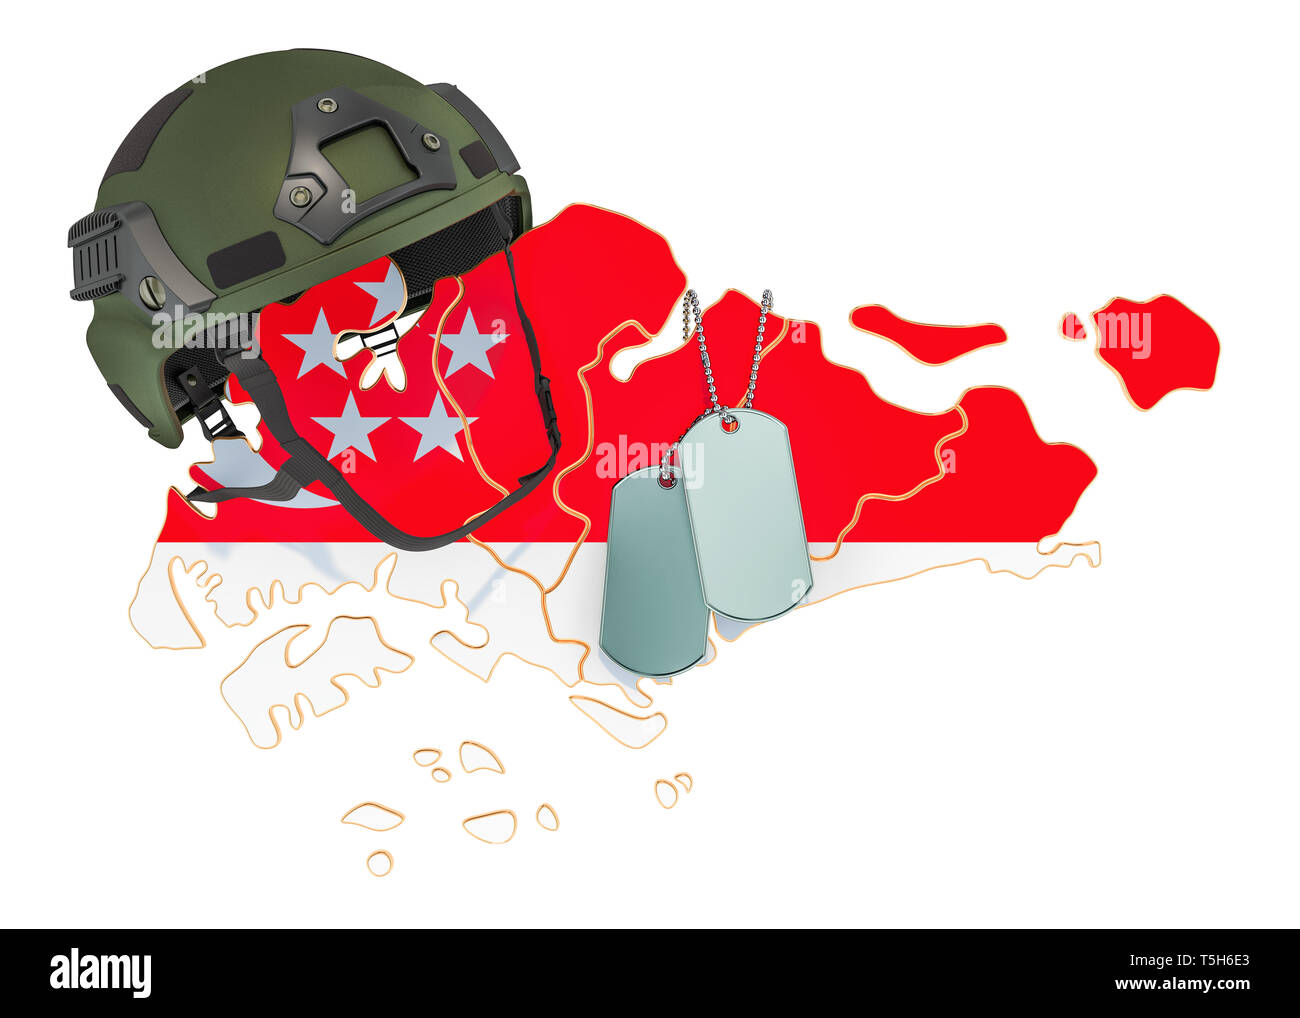 Militärische Gewalt von Singapur, Armee oder Krieg Konzept. 3D-Rendering auf weißem Hintergrund Stockfoto